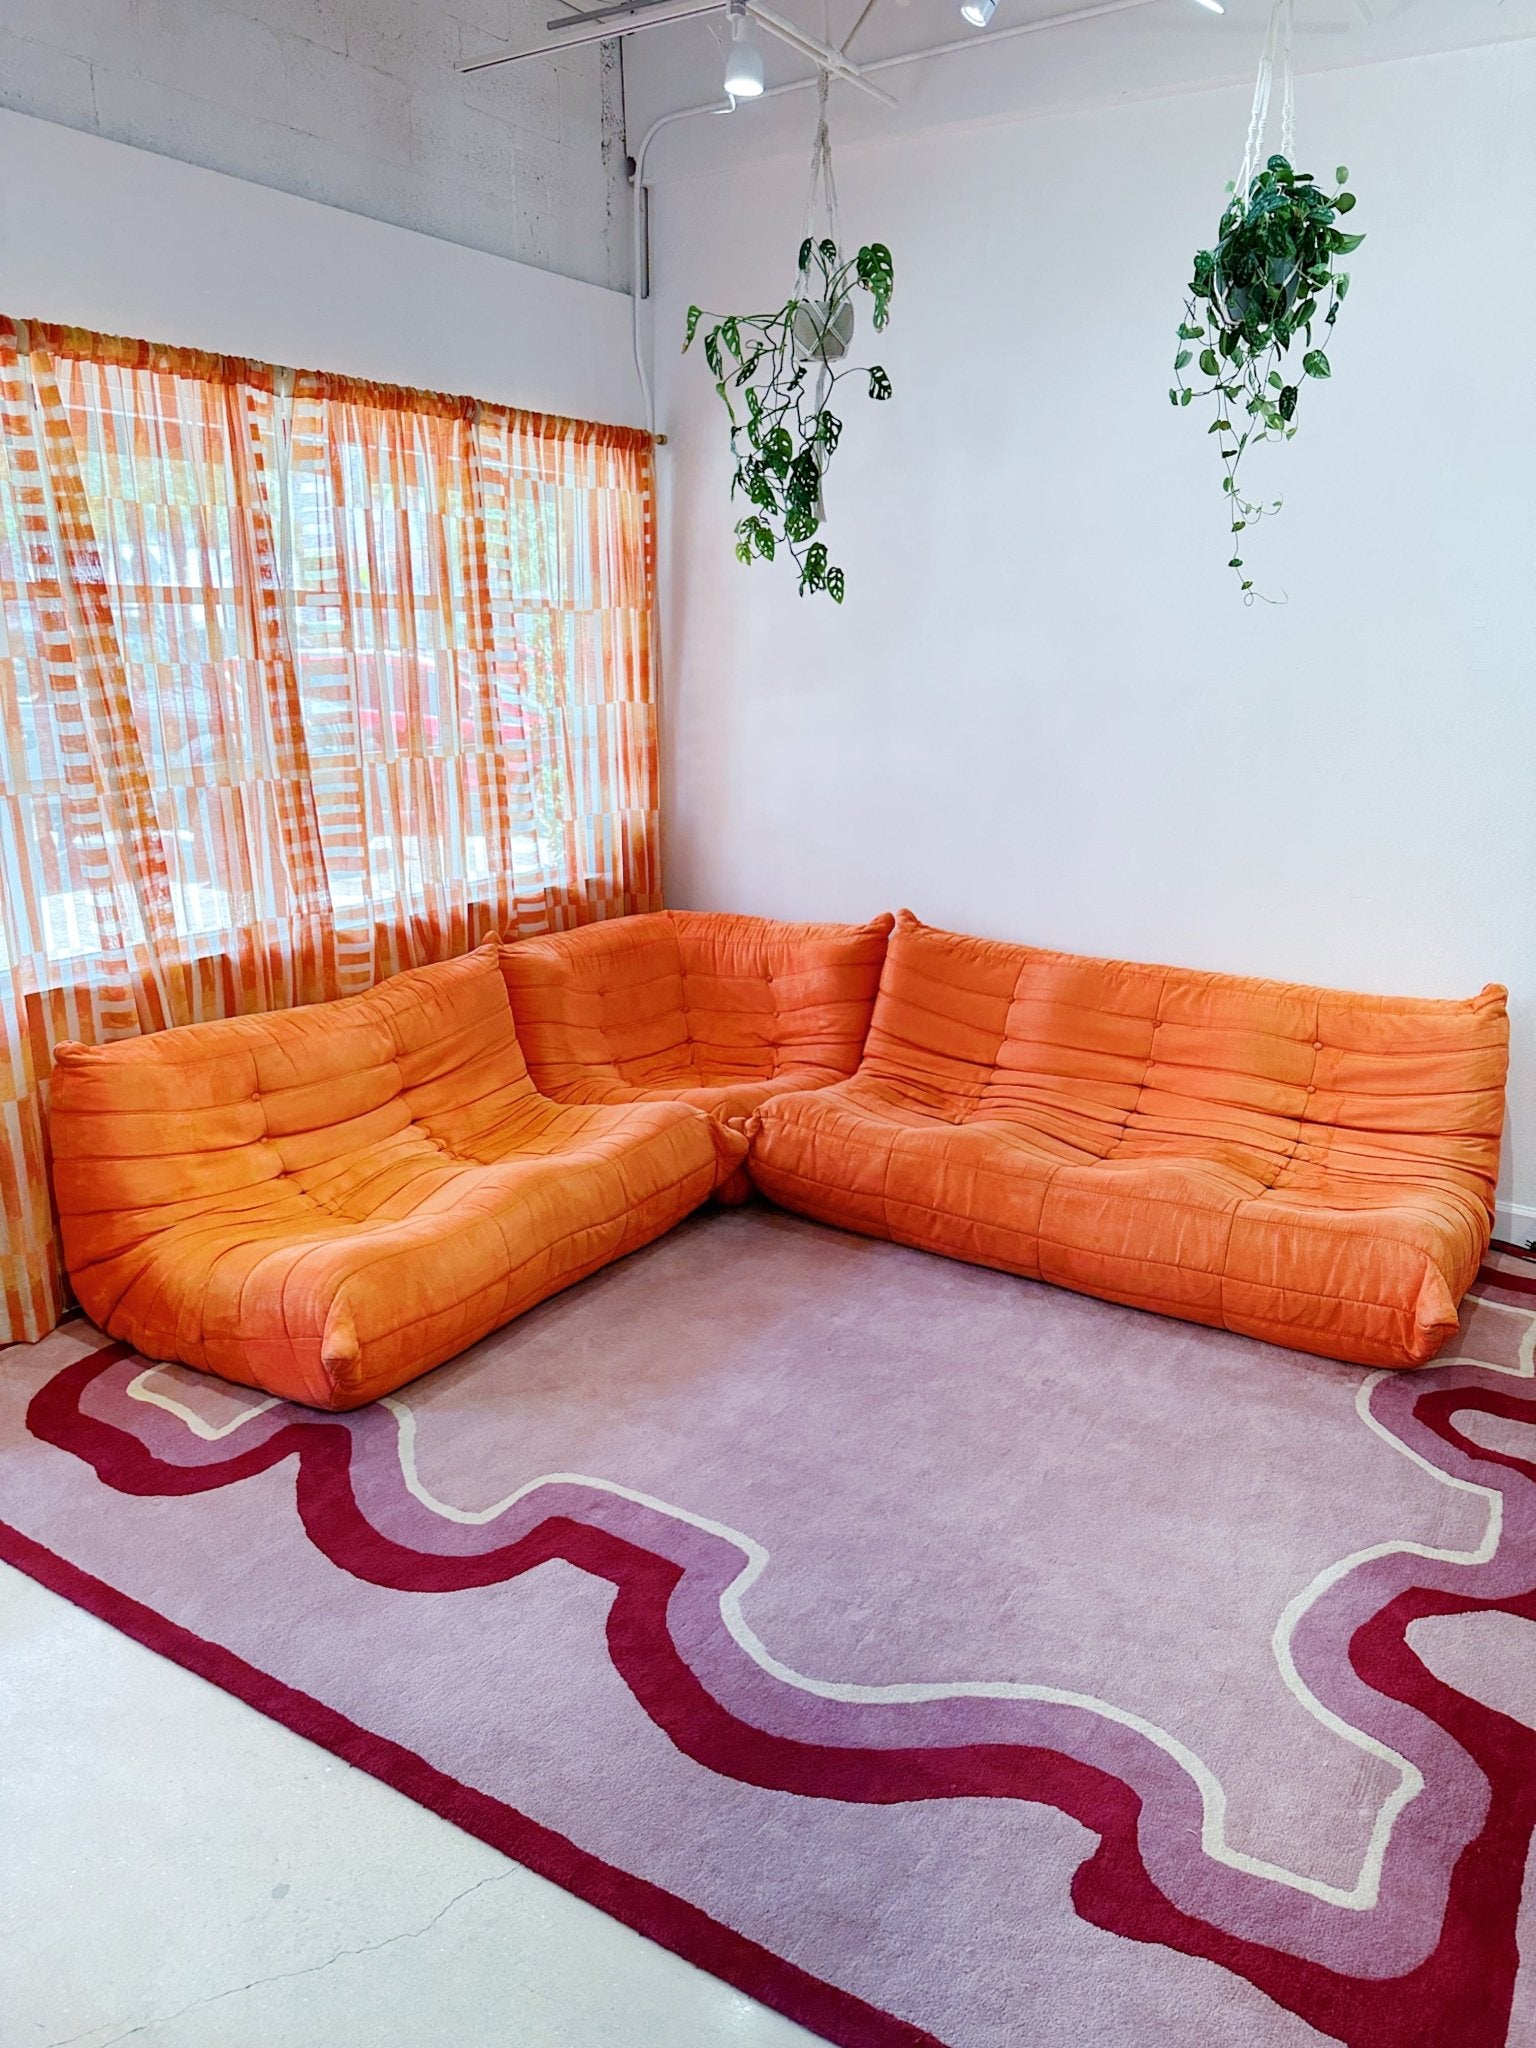 Pink & Red Squiggle Carpet - Rehaus